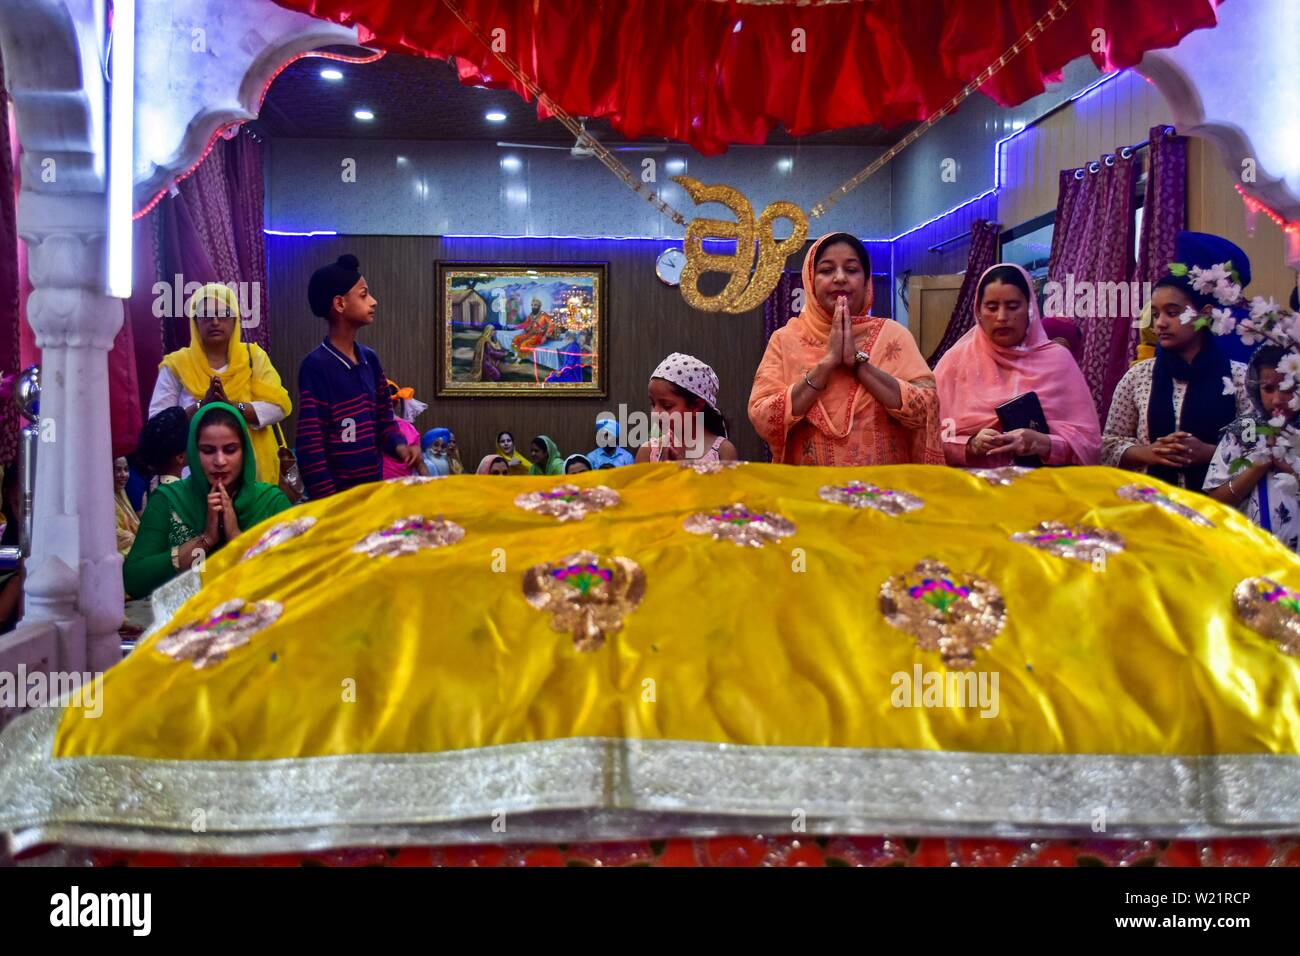 Les dévots prient à un temple Sikh lors d'un anniversaire de naissance de la sixième gourou, Hargobind Singh à Srinagar.Les Sikhs dans tout le pays célèbrent l'anniversaire de la naissance de leur sixième gourou, Hargobind Singh, vendredi. La célébration a eu lieu en grande pompe et montrer à un temple Sikh principal ici à Srinagar. Banque D'Images